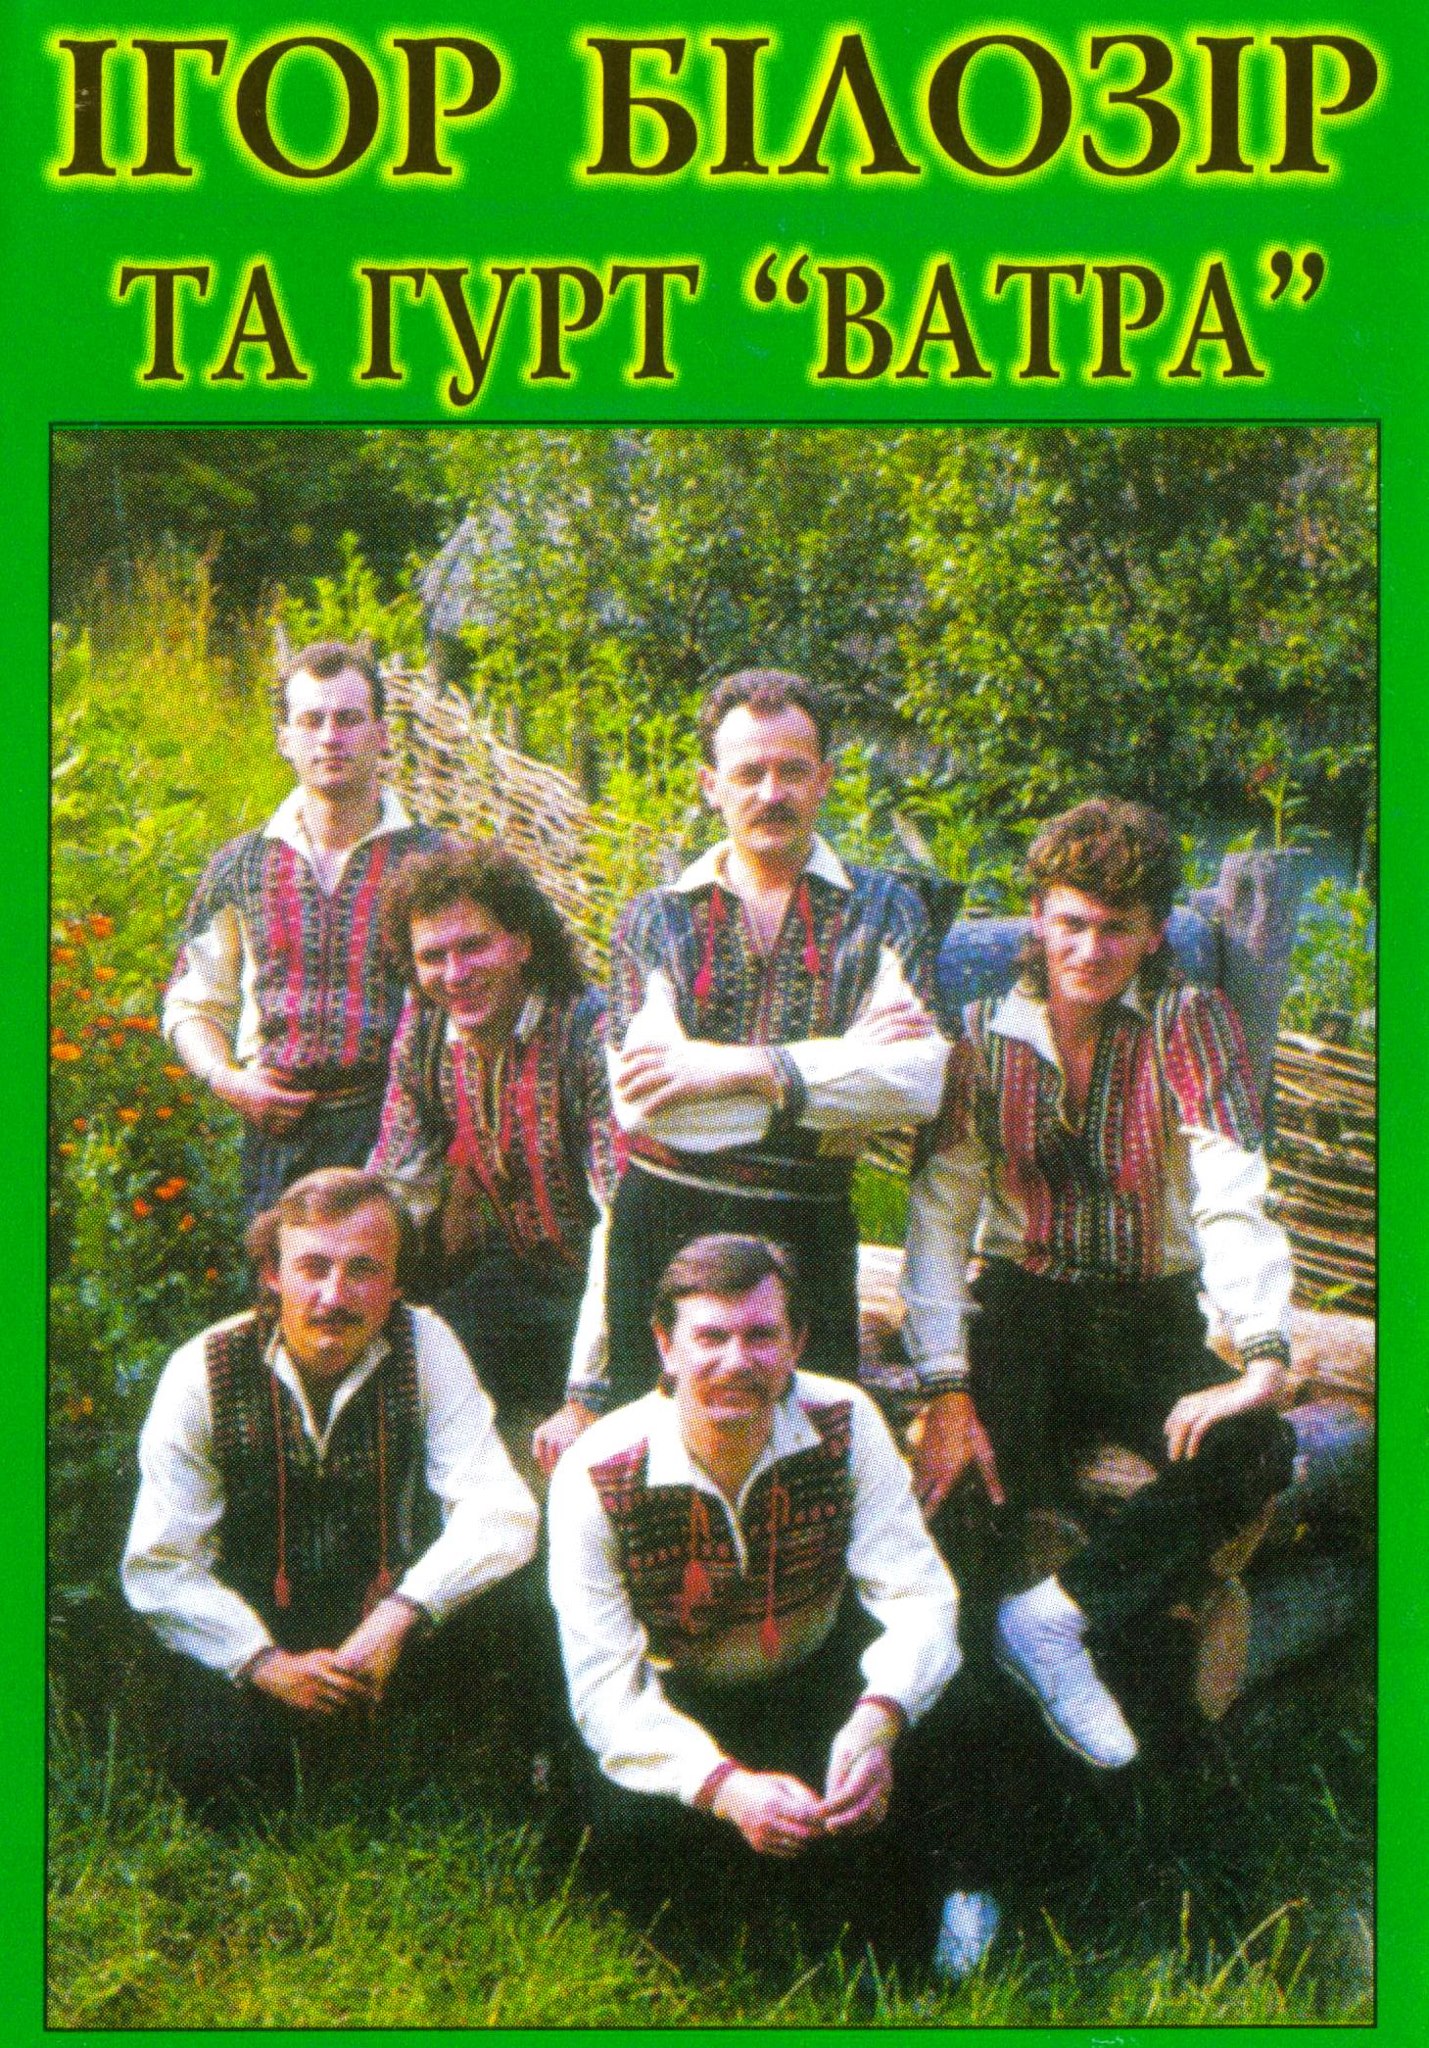 bilozir-ta-vatra-1988-89